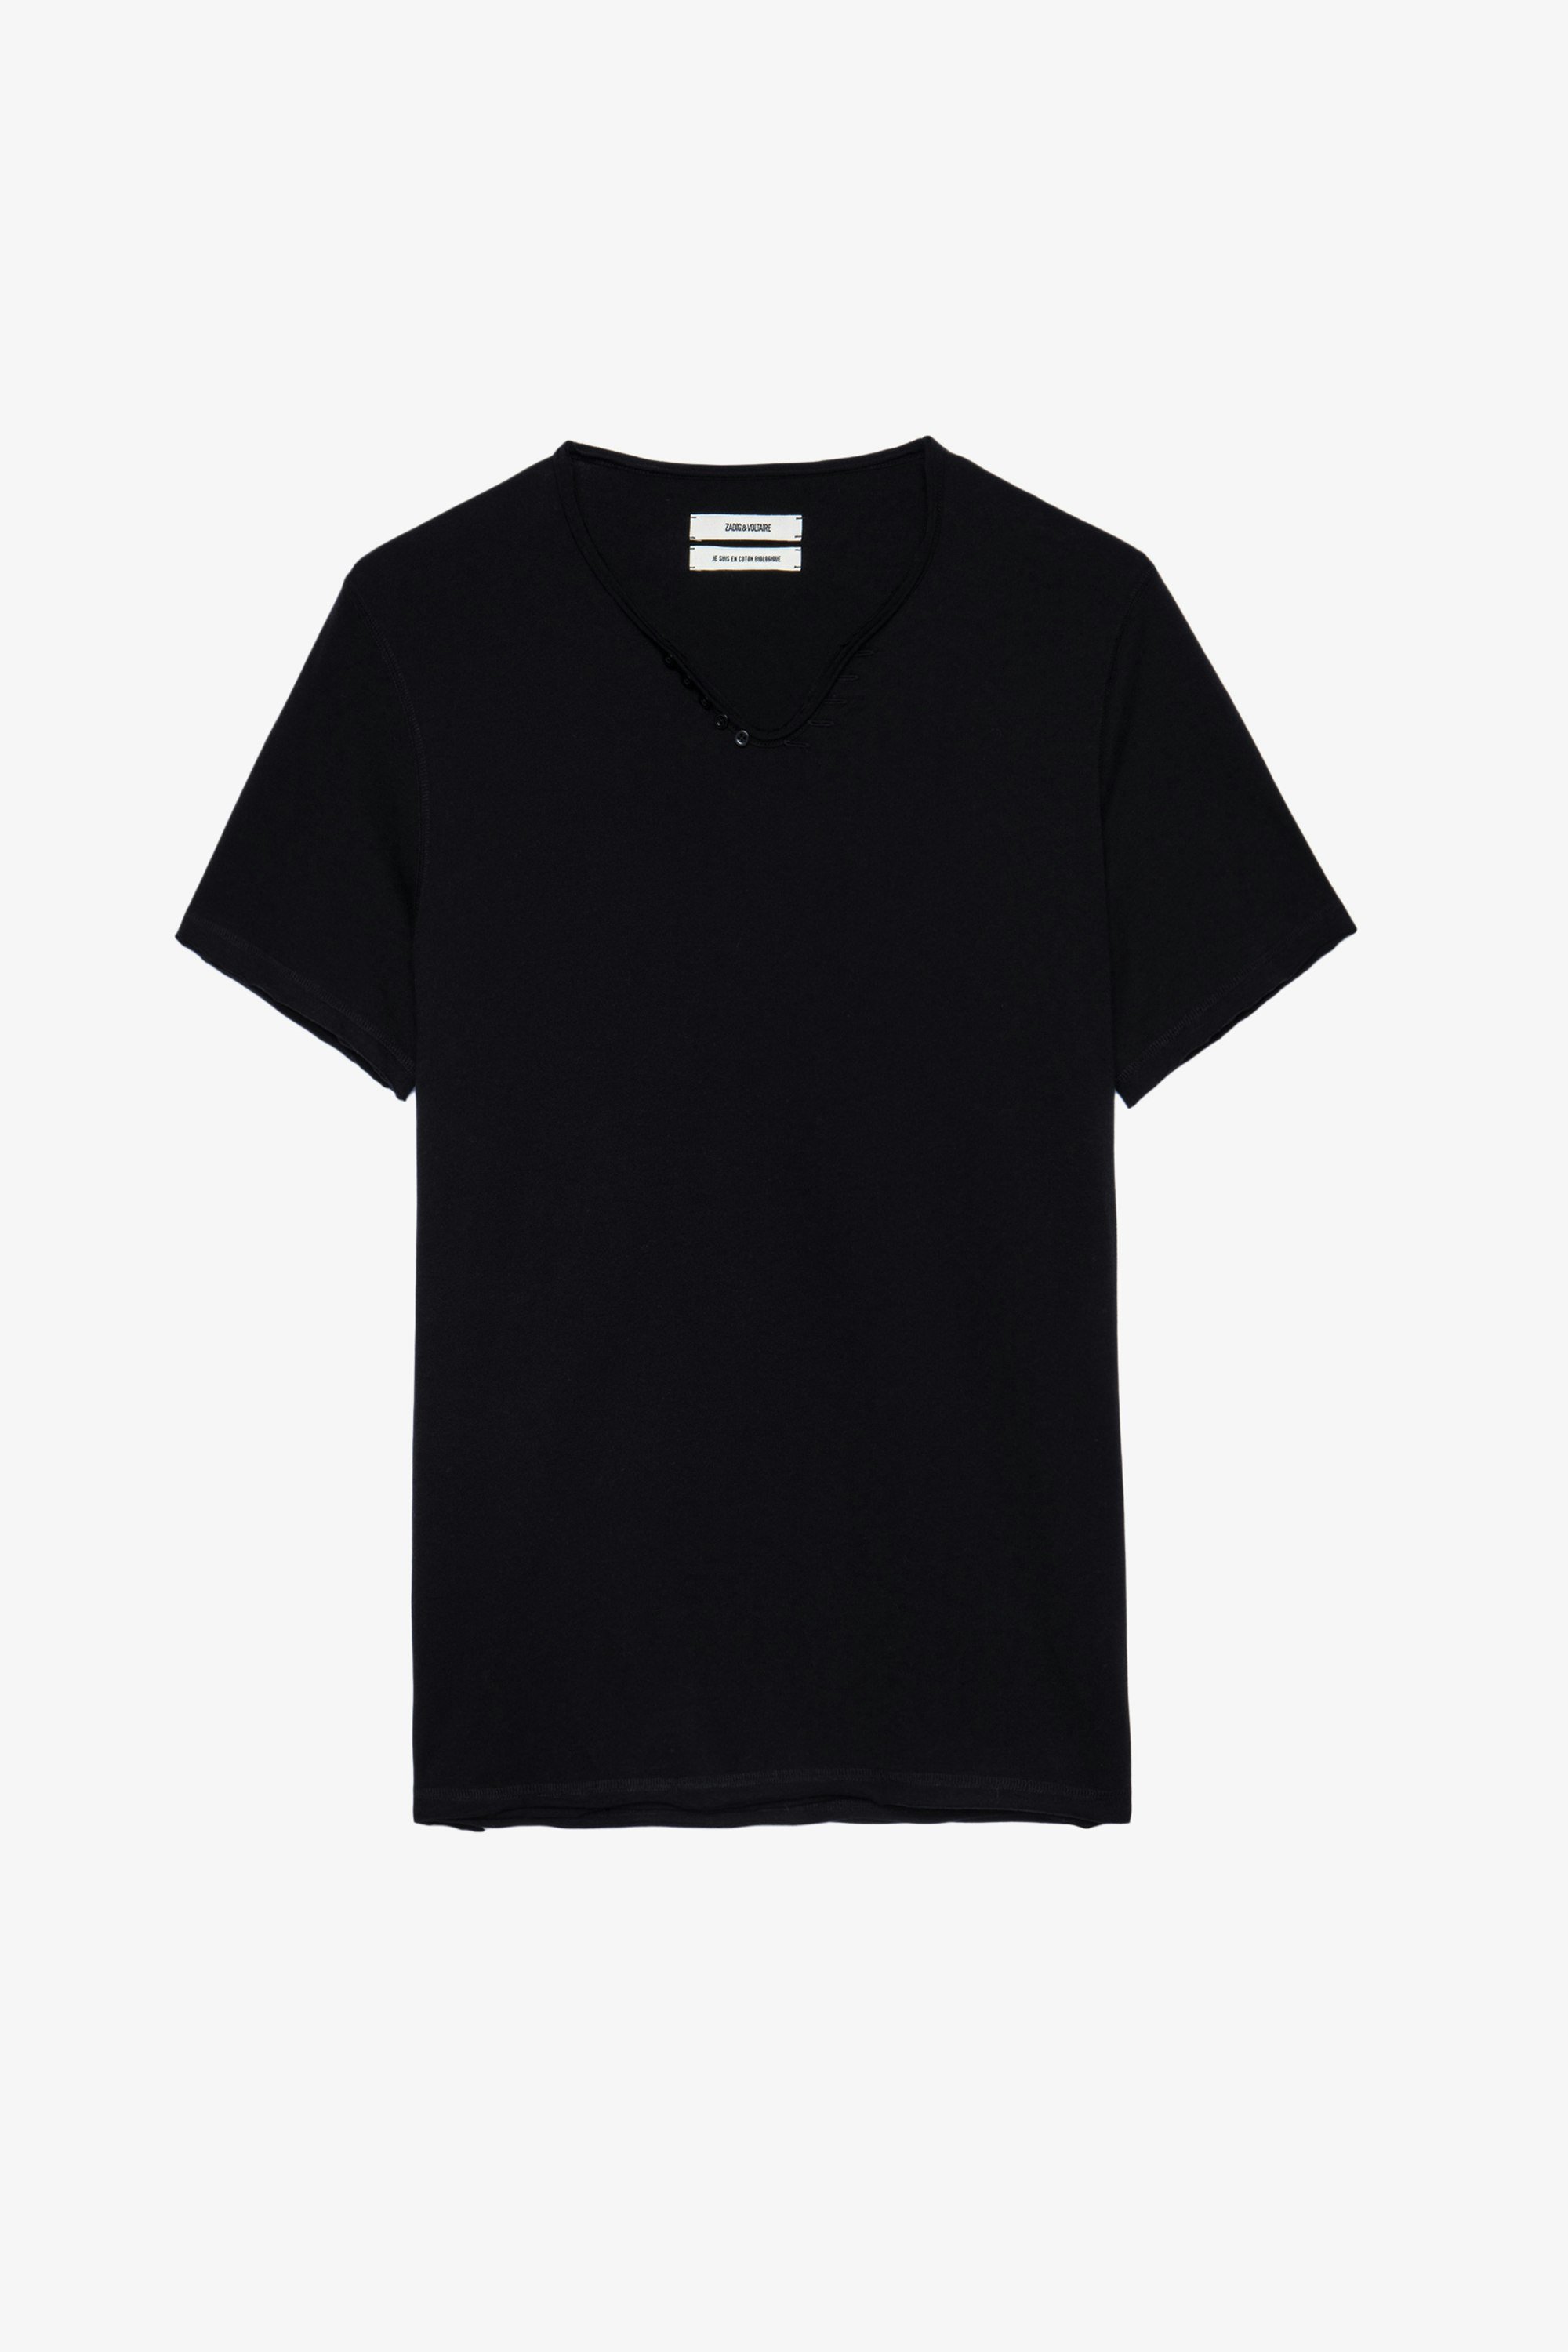 T-shirt Monastir Schwarzes Herren-T-shirt aus Baumwolle mit Henley-Ausschnitt